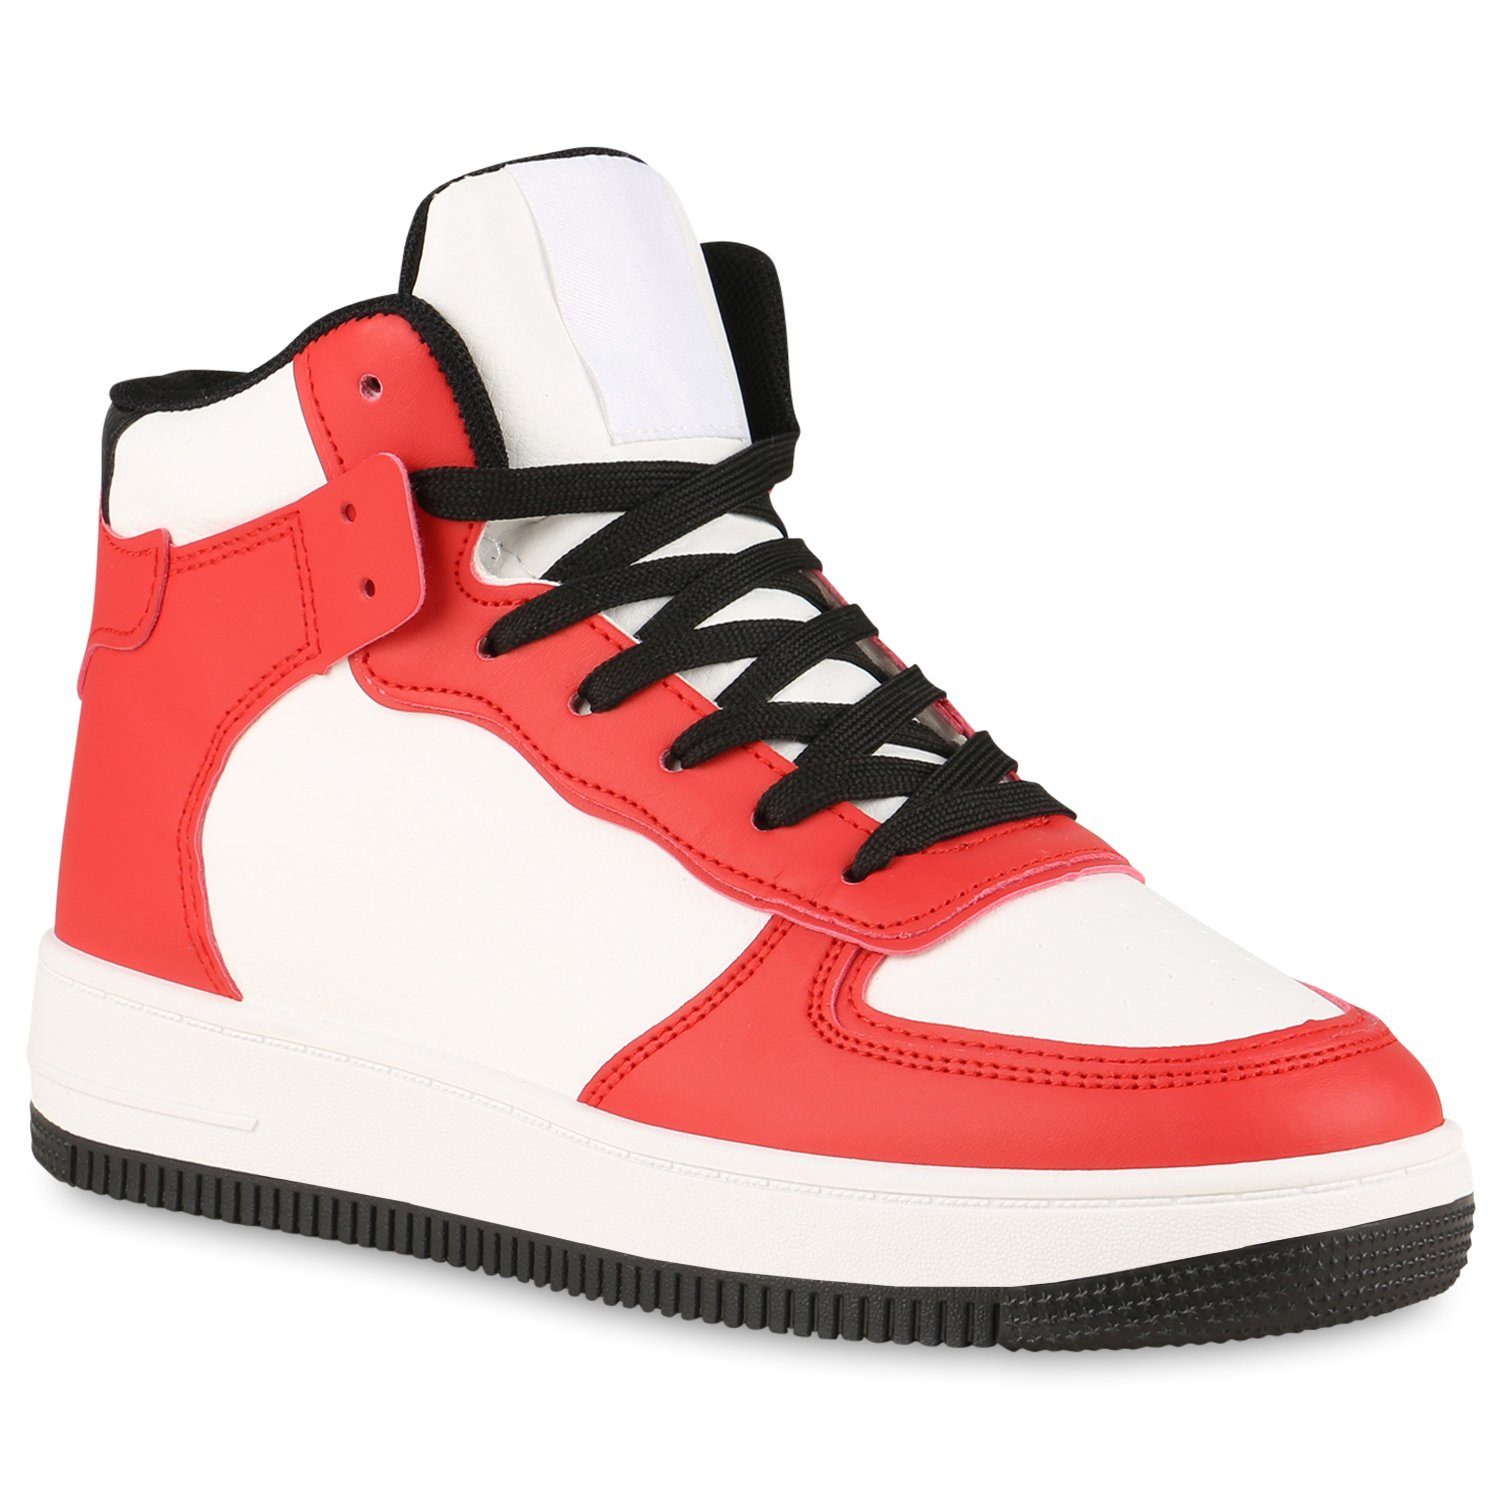 VAN HILL 838220 Sneaker Bequeme Schuhe online kaufen | OTTO